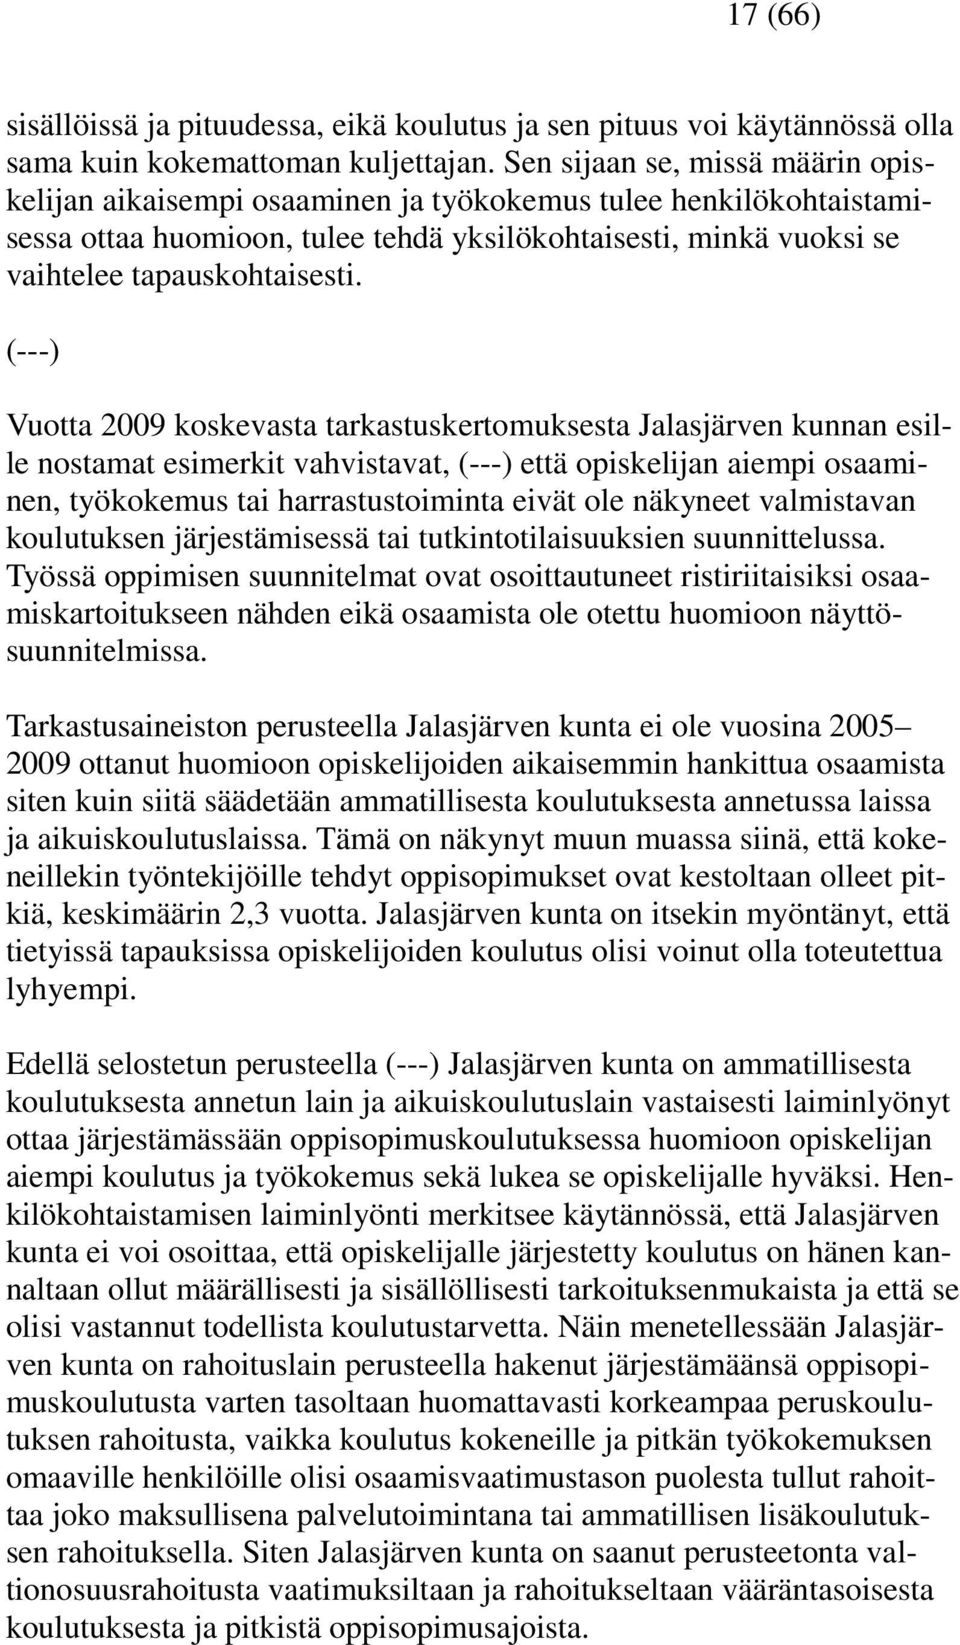 (---) Vuotta 2009 koskevasta tarkastuskertomuksesta Jalasjärven kunnan esille nostamat esimerkit vahvistavat, (---) että opiskelijan aiempi osaaminen, työkokemus tai harrastustoiminta eivät ole